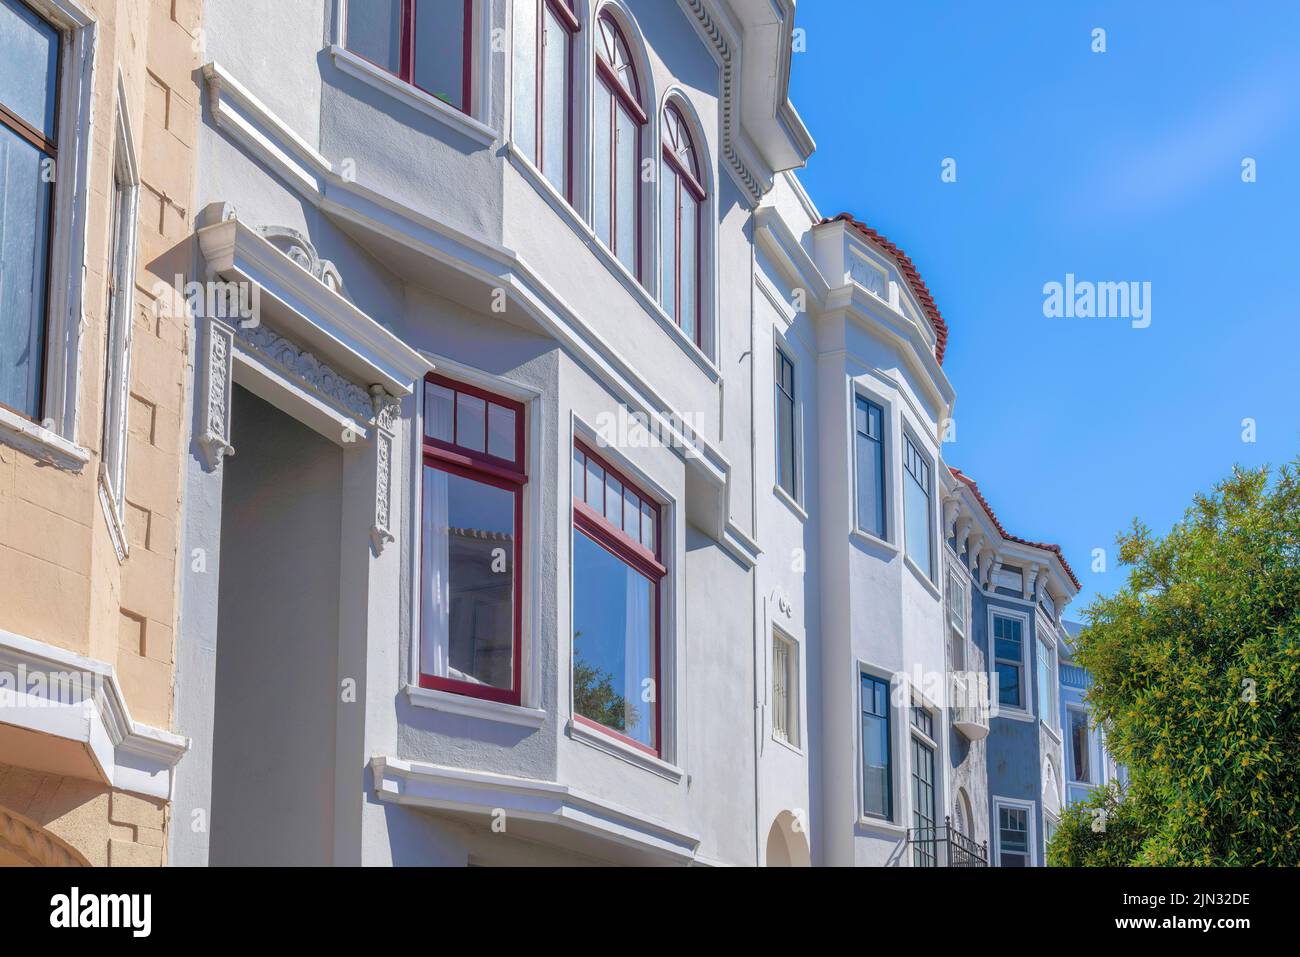 Rowhouses vue latérale avec murs peints sur les arbres contre le ciel à San Francisco, CA. Extérieur de bâtiments résidentiels avec garnitures décoratives Banque D'Images